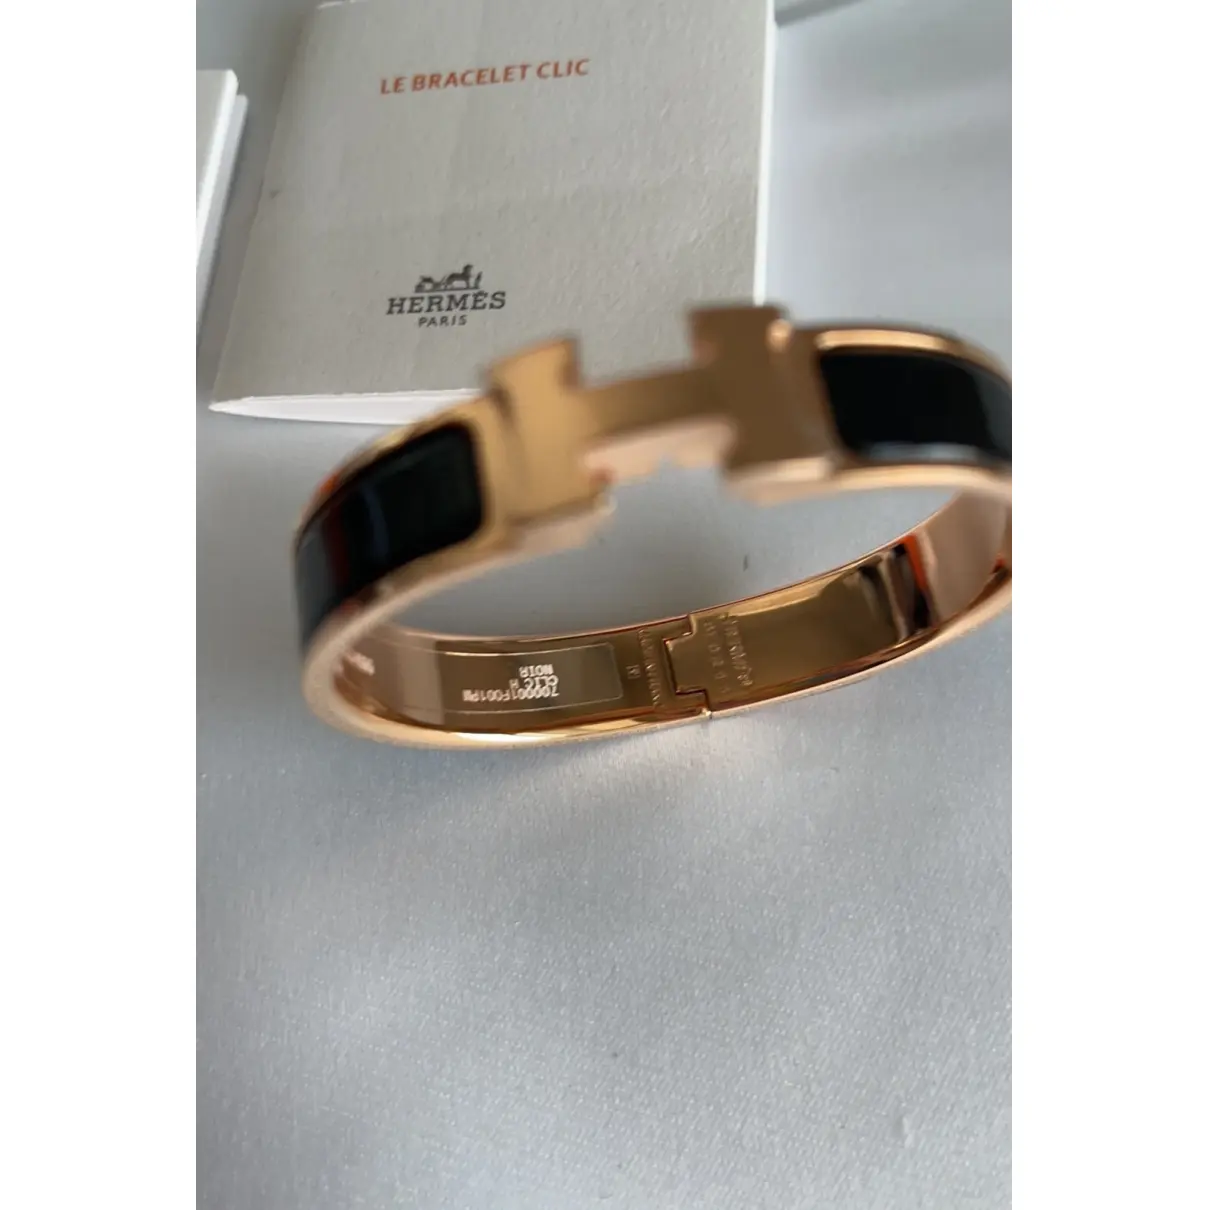 Buy Hermès Pink gold bracelet online